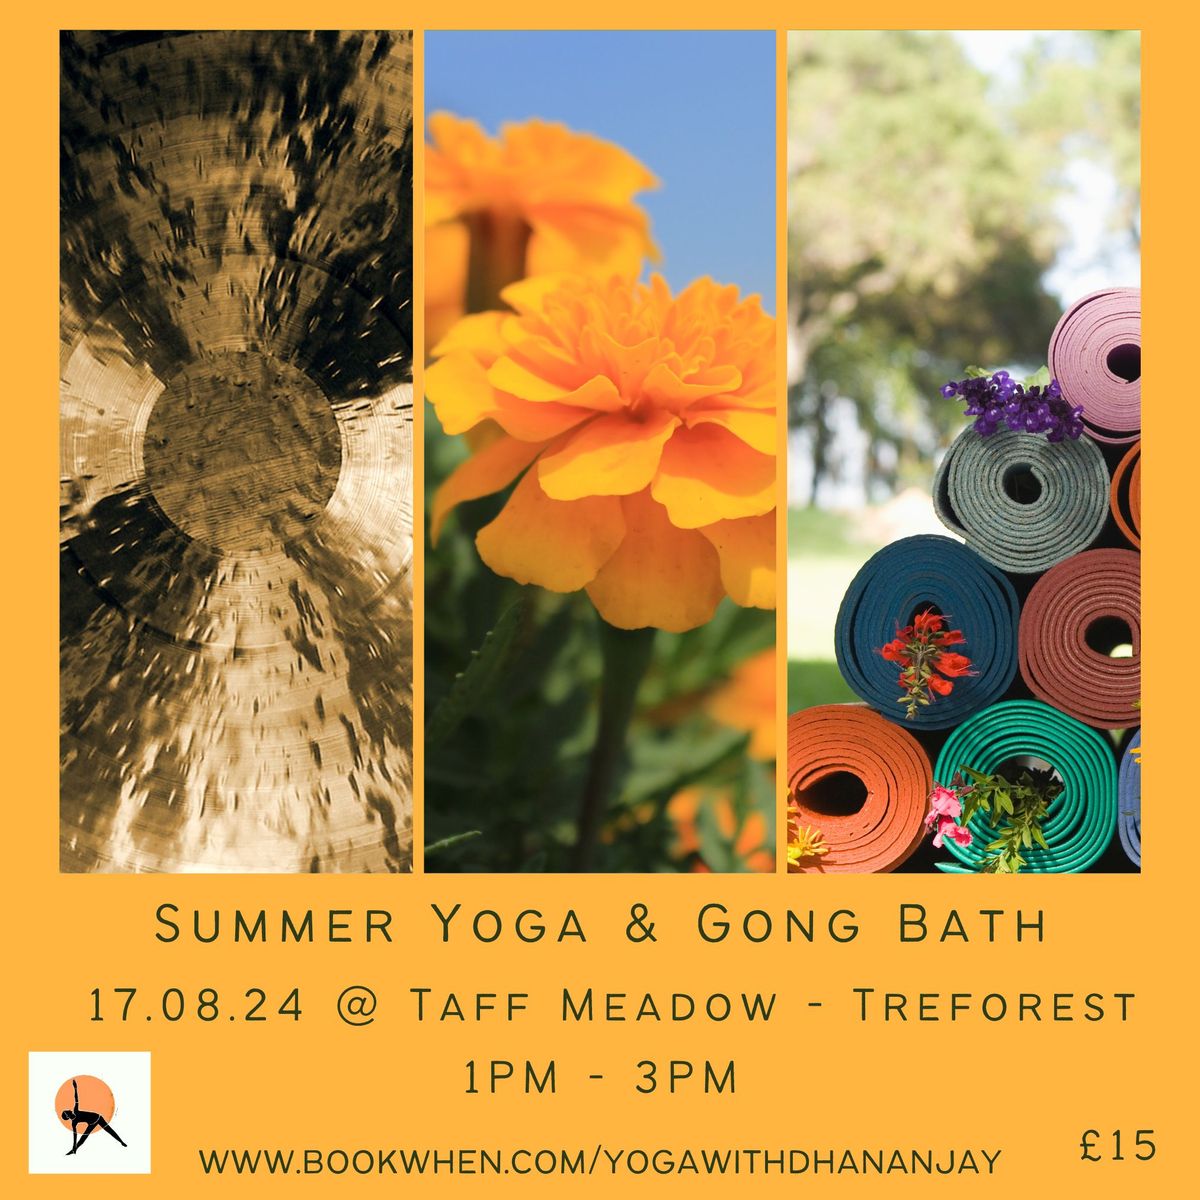 Summer Yoga & Gong Bath - Taff Meadow, Treforest